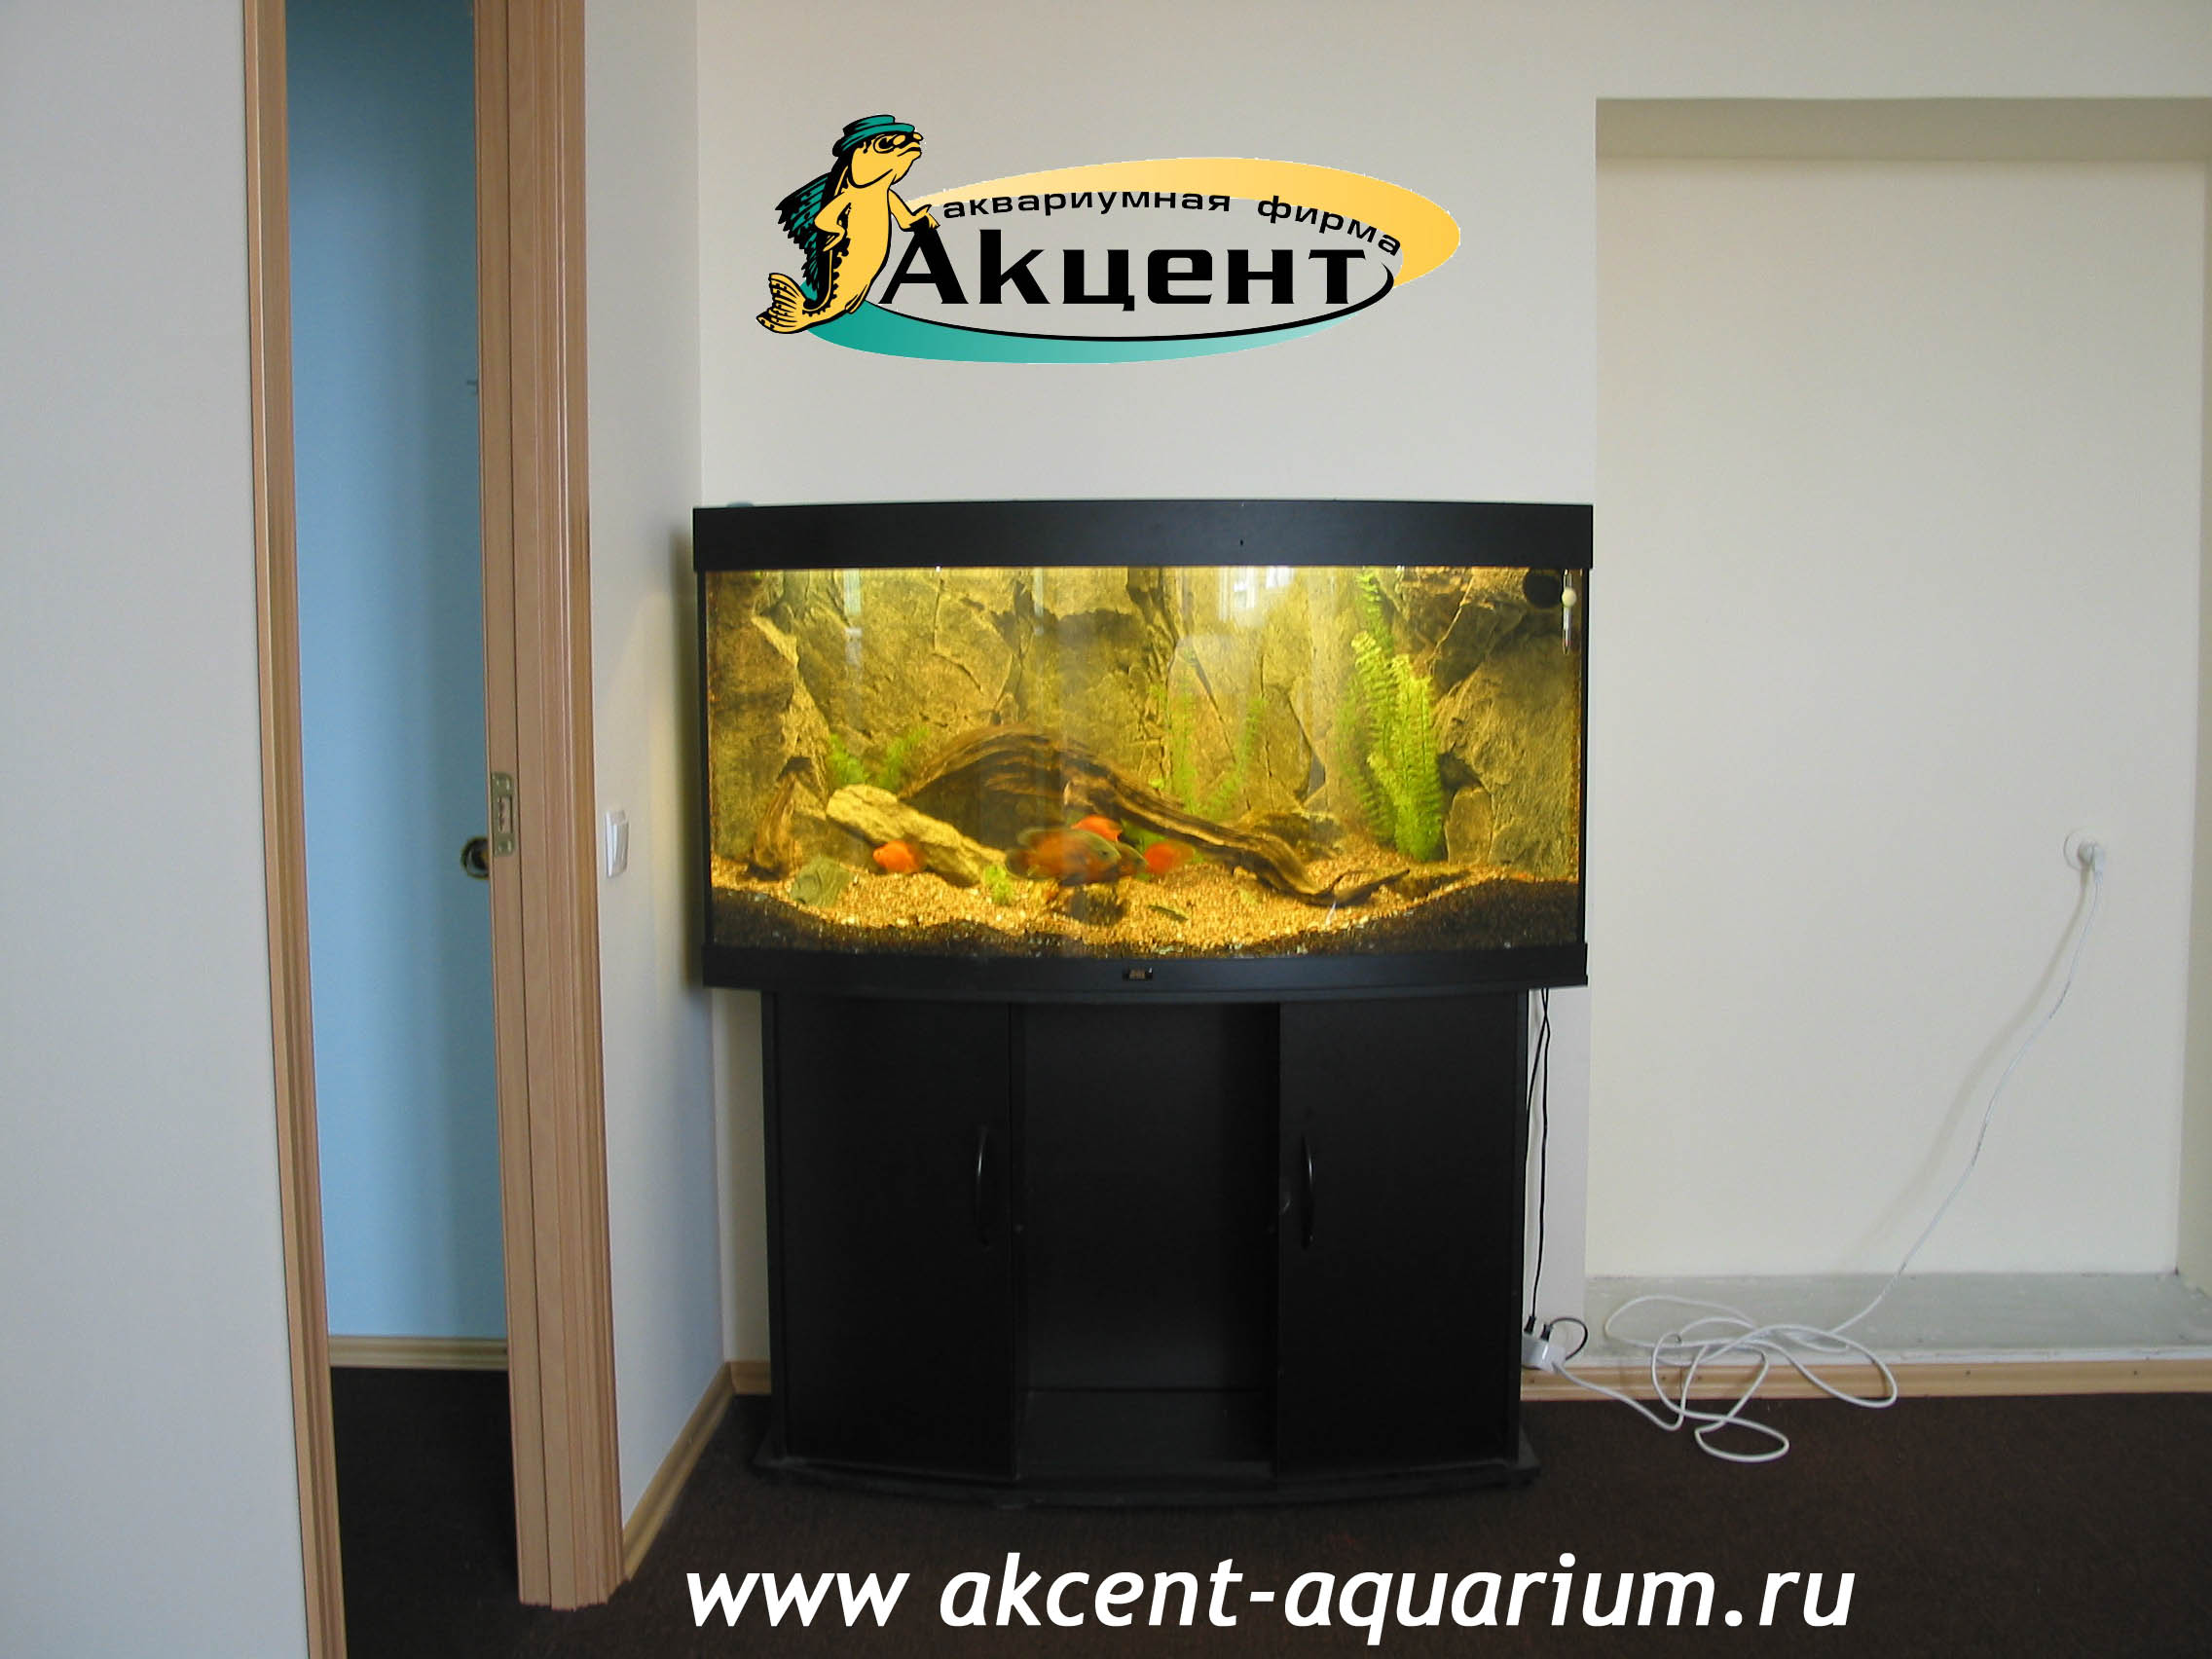 Акцент-аквариум, аквариум с 240 литров, с объемным фоном гнутым передним стеклом